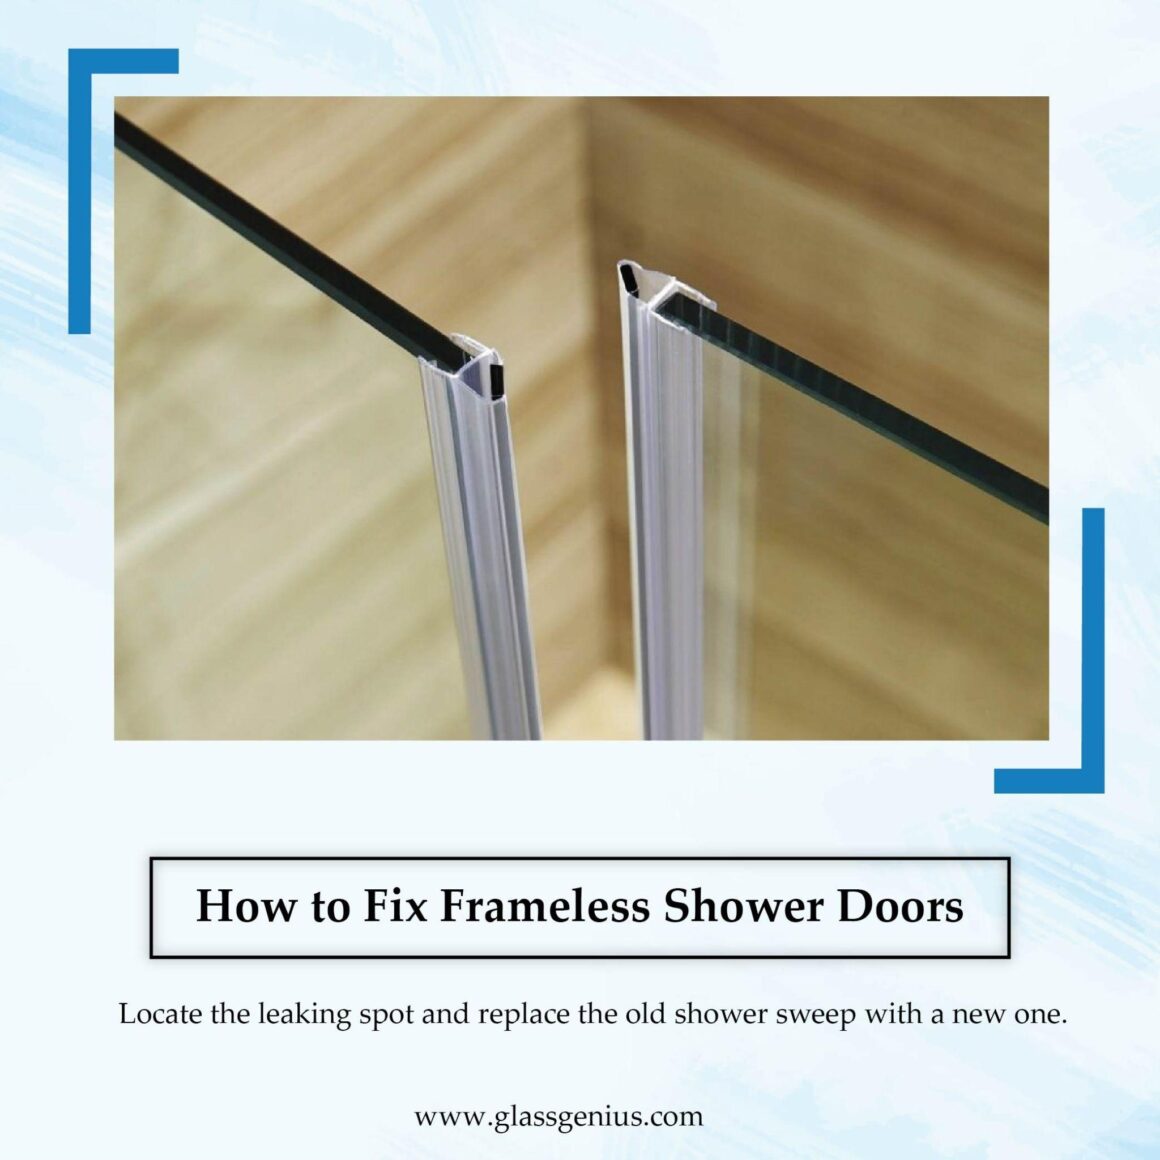 Fixing Frameless Shower Doors